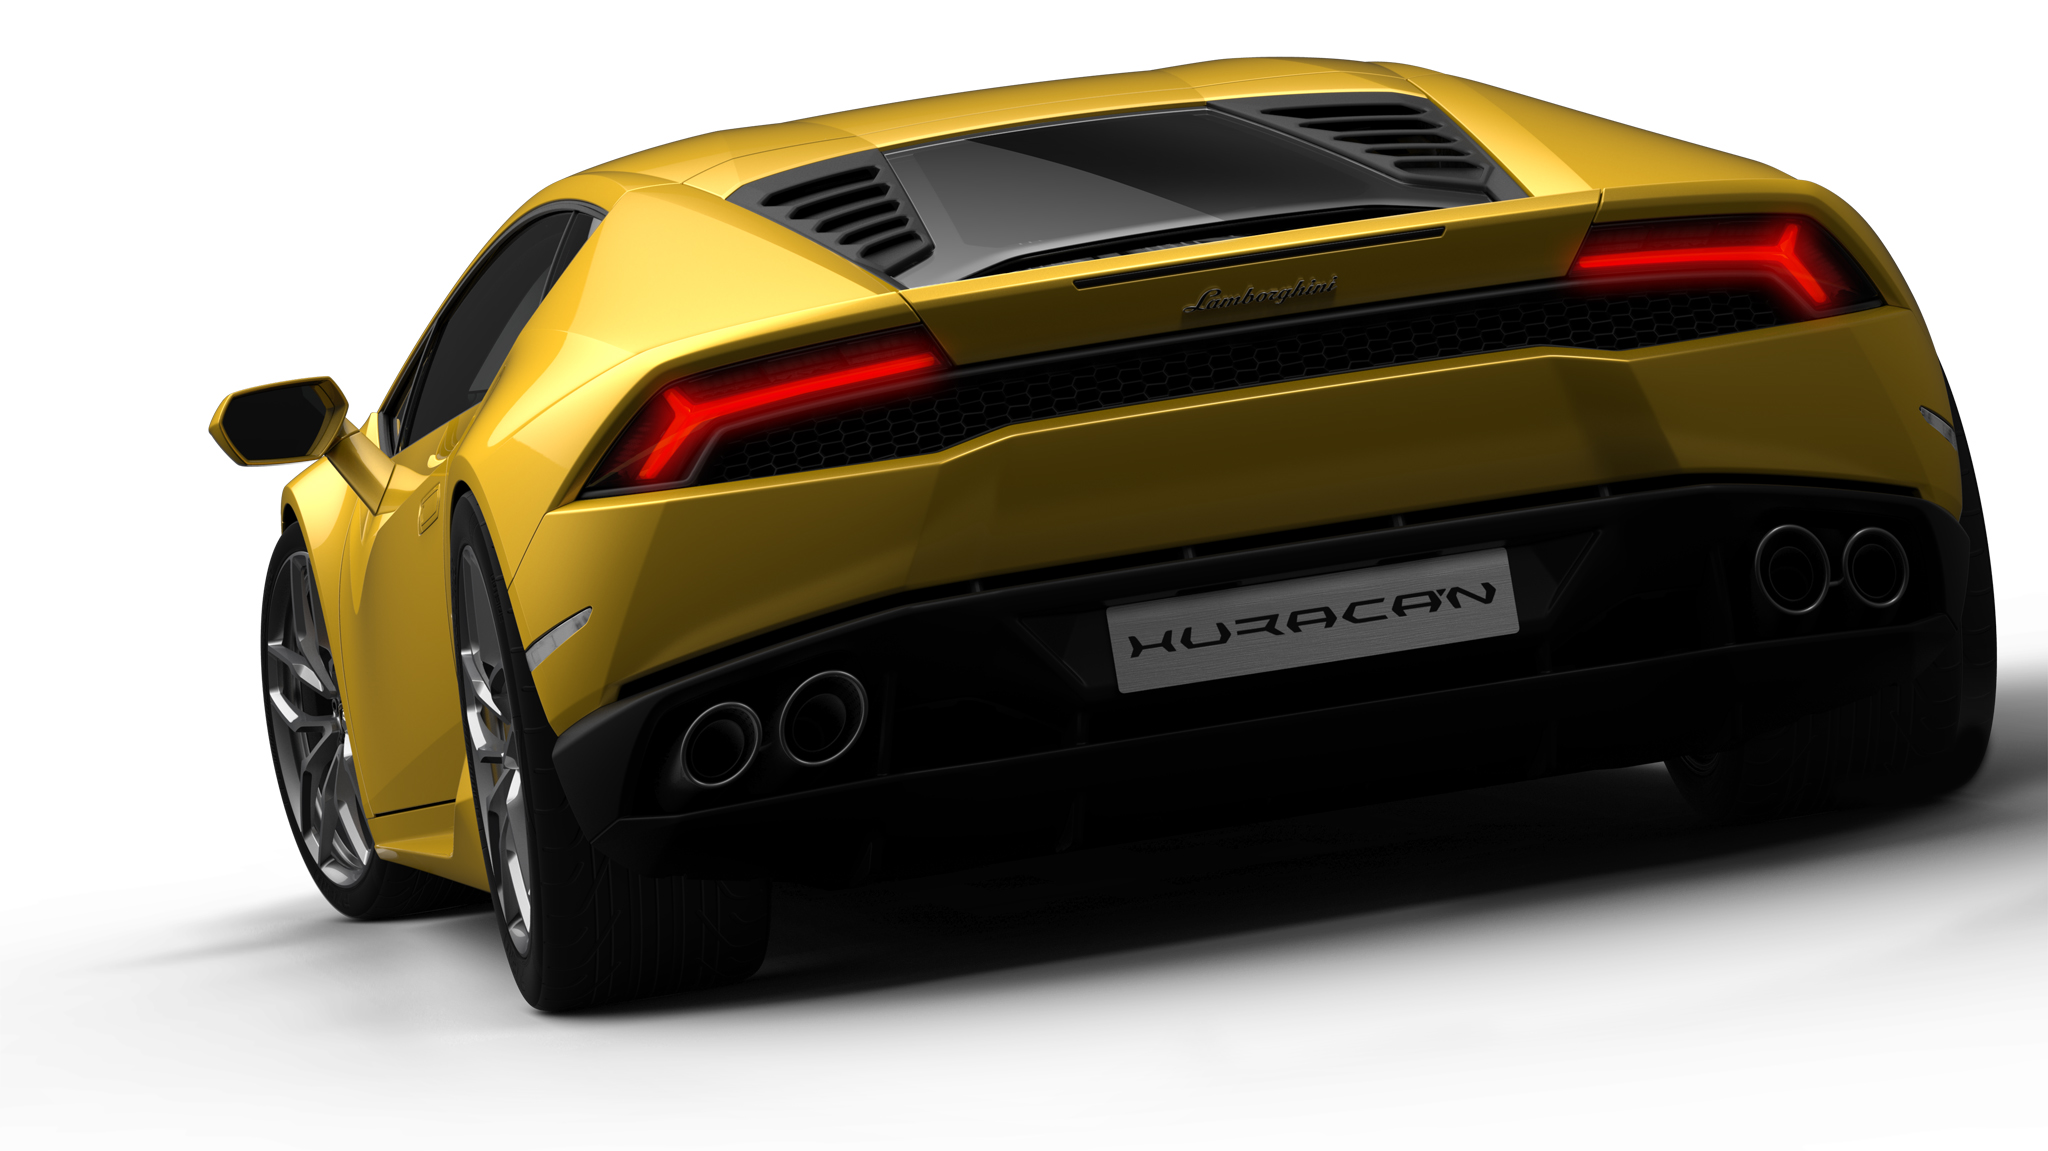   2014 ,   Lamborghini Huracan2014